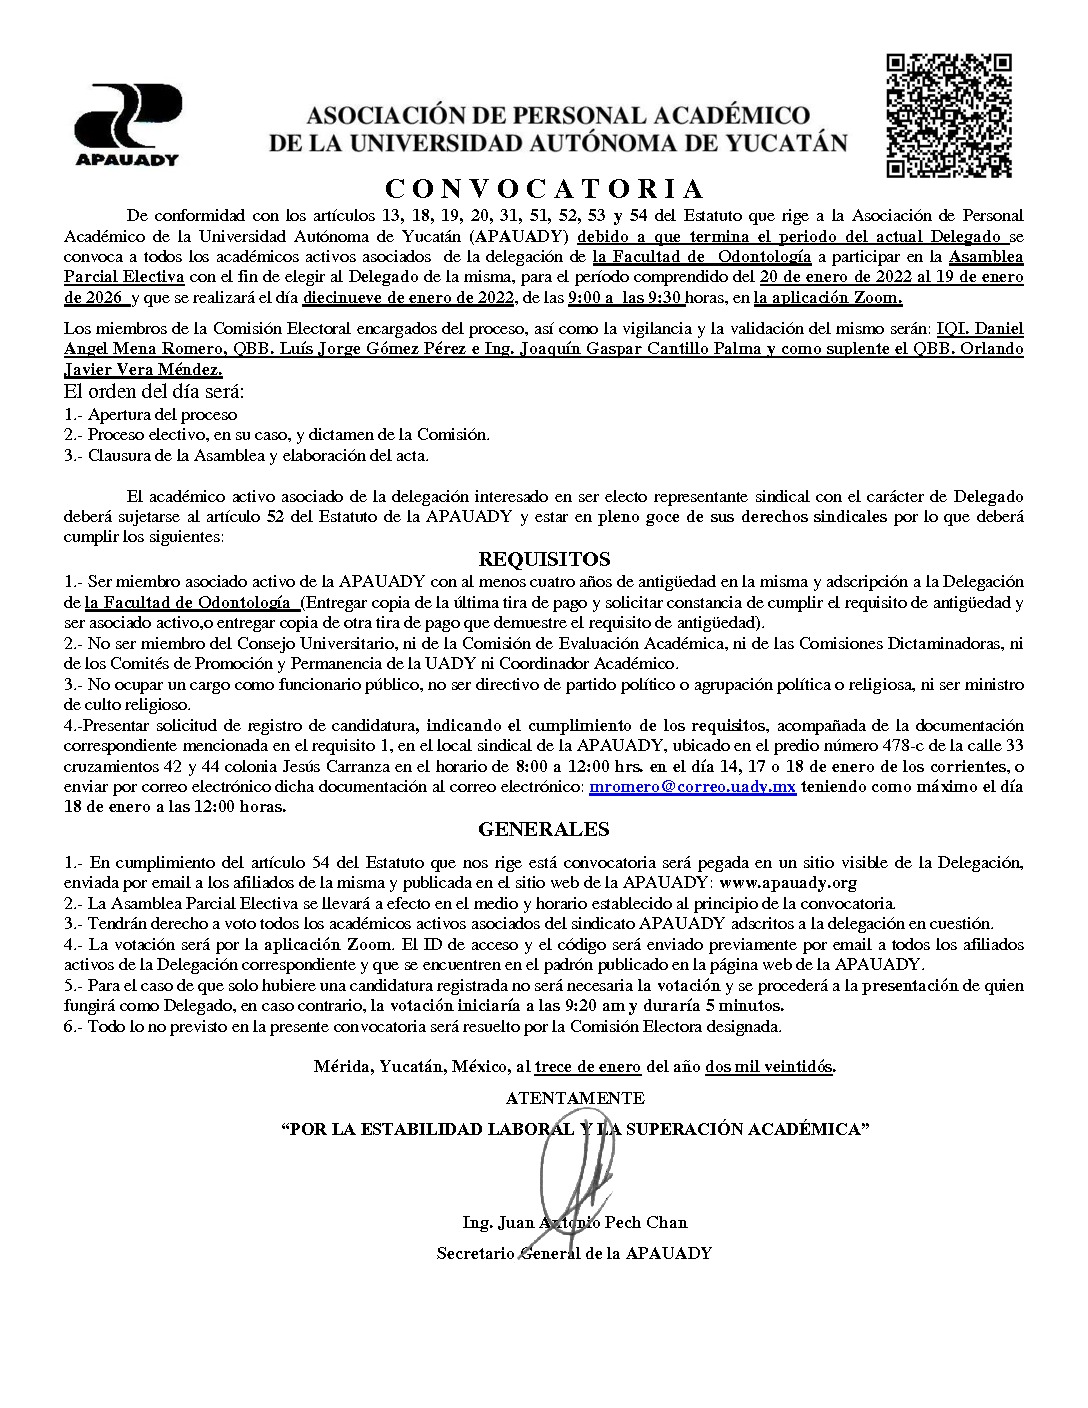 Featured image for “Convocatoria Asamblea Parcial Electiva | Delegado Facultad de Odontología | 19 enero 2022 | 9:00-9:30”